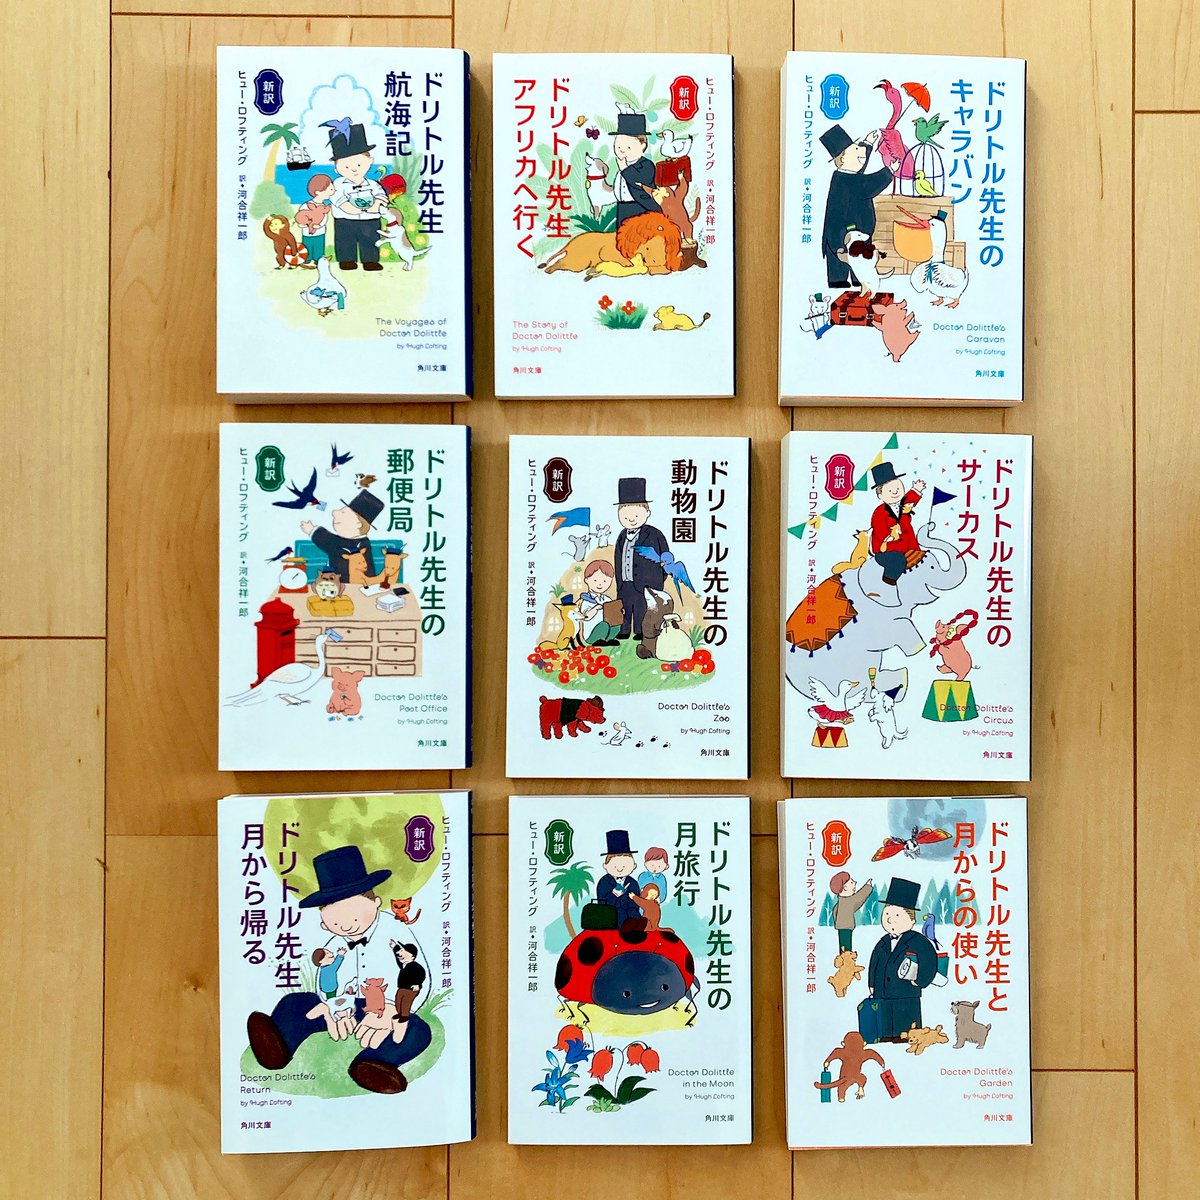 「新訳ドリトル先生月から帰る」【KADOKAWA】装画挿絵 発売しました!シリーズ9作目。毎度奇想天外な冒険展開にワクワクします🌝 